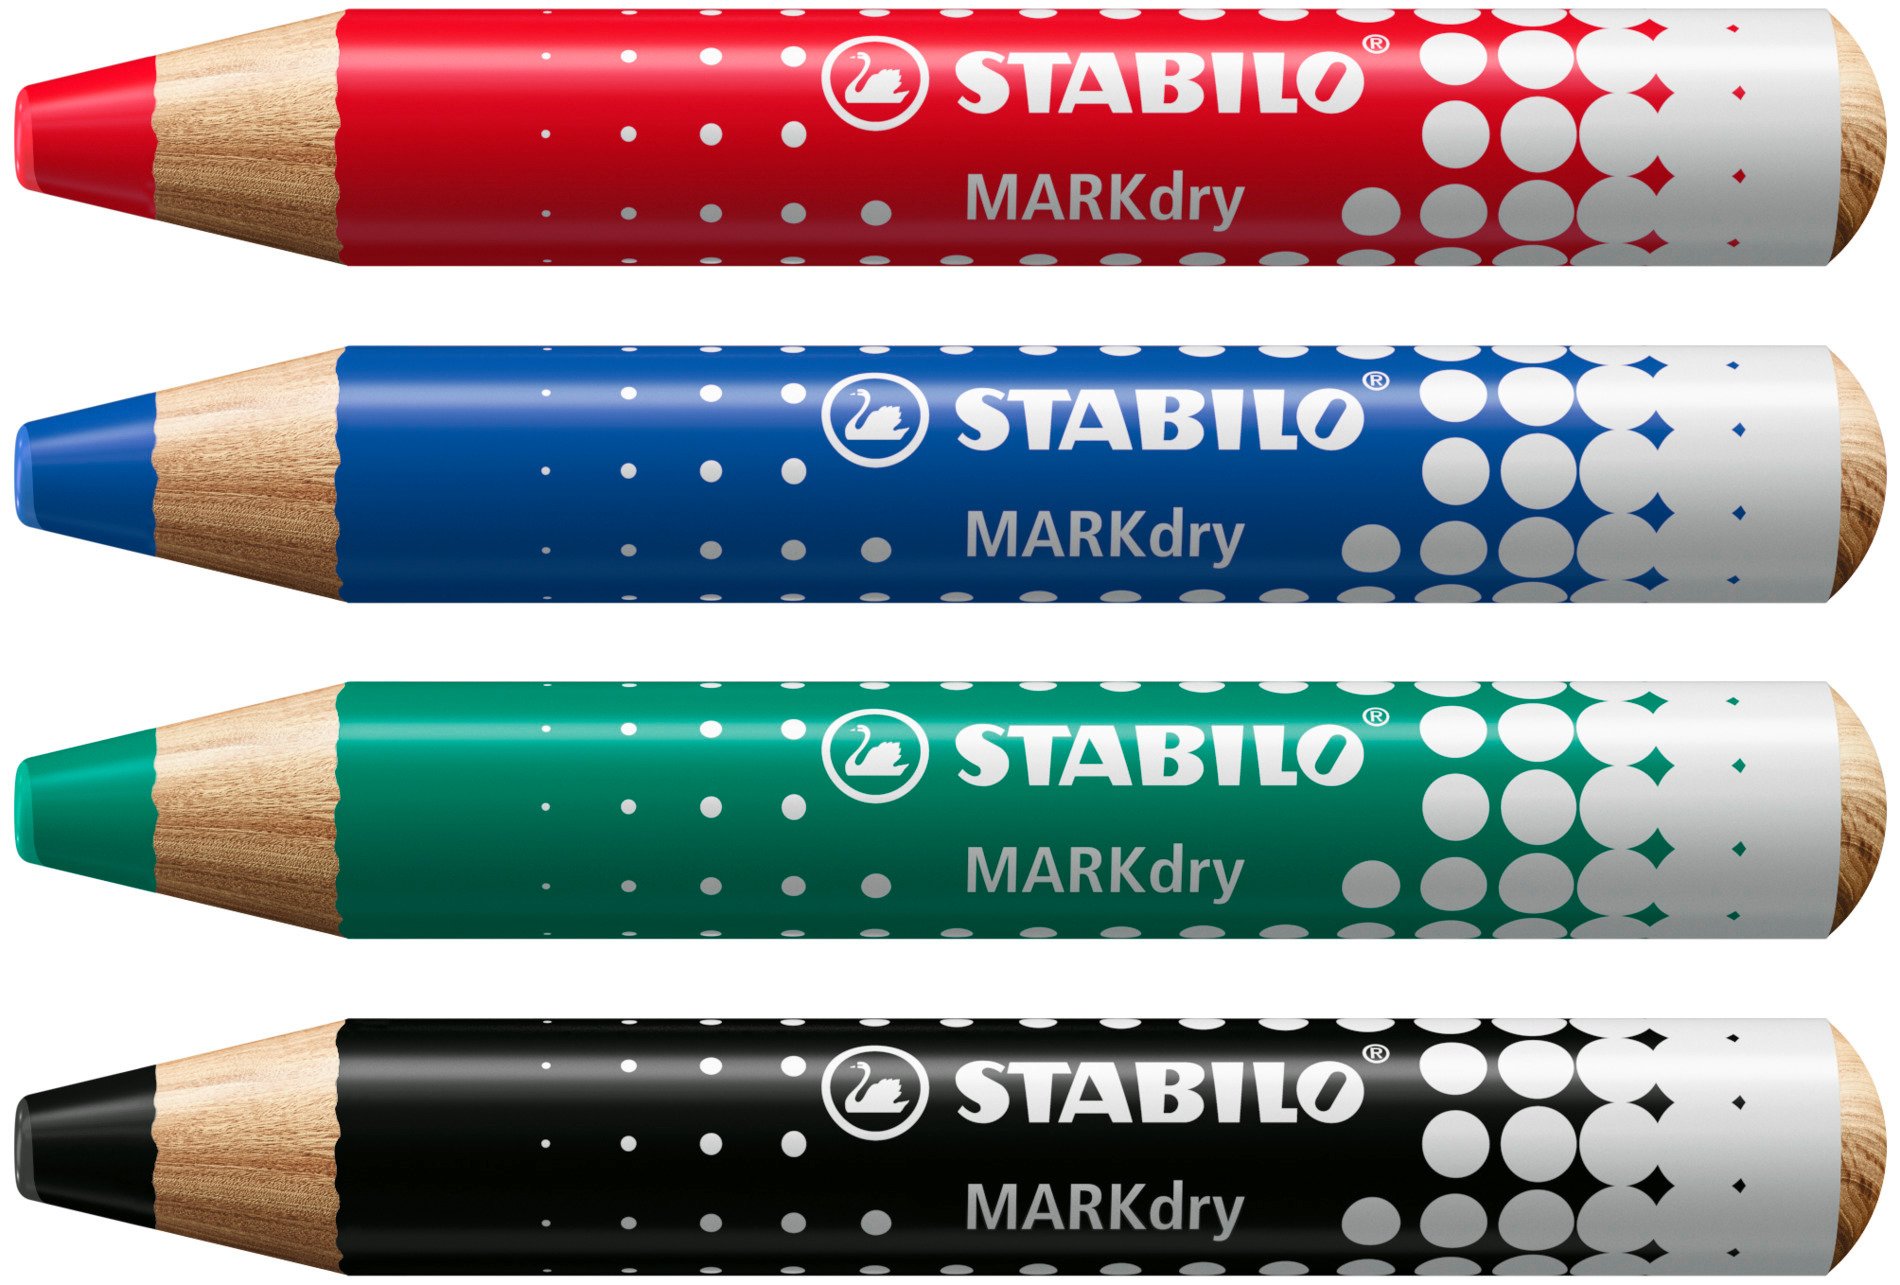 STABILO MARKdry - www.stabilo.fr